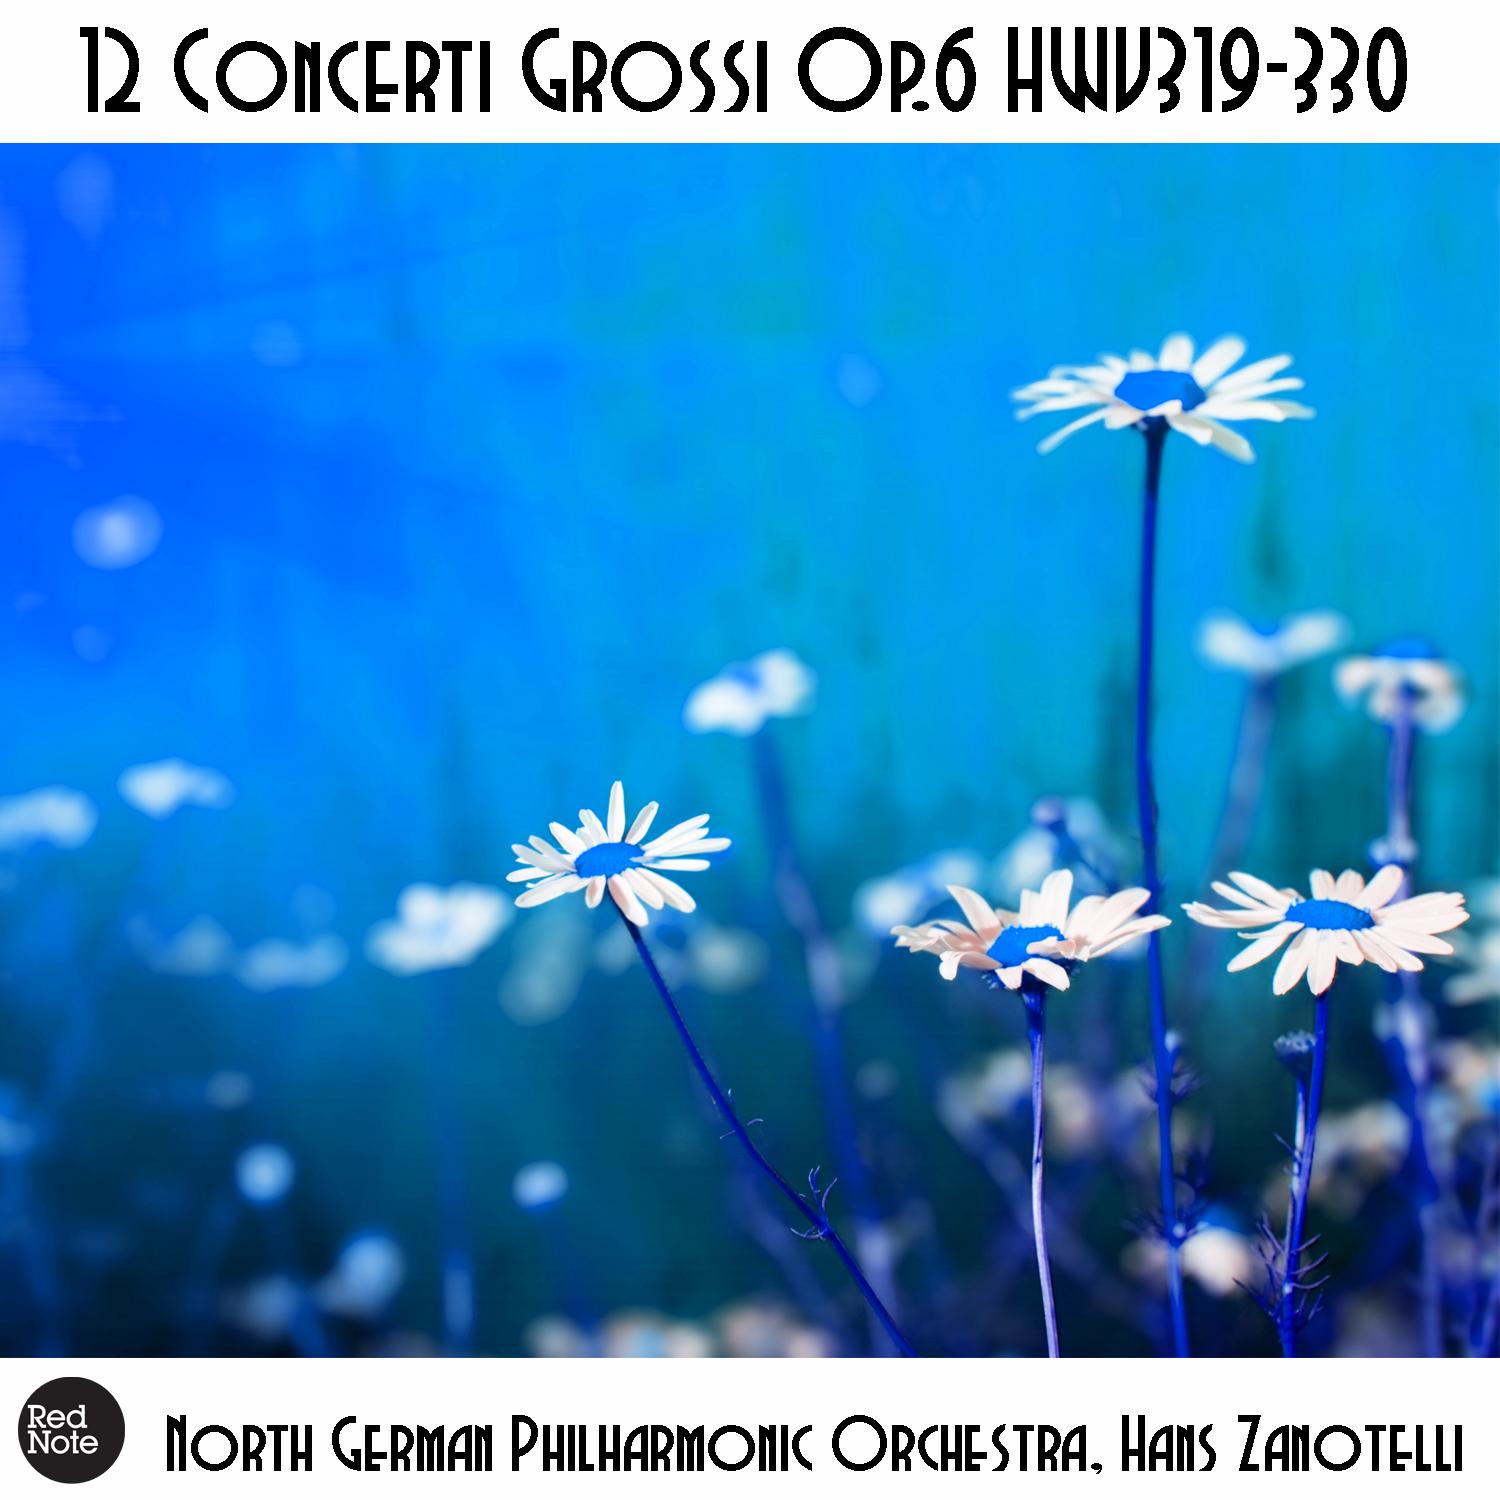 Concerti Grossi No. 5, Op. 6 HWV323: V. Allegro